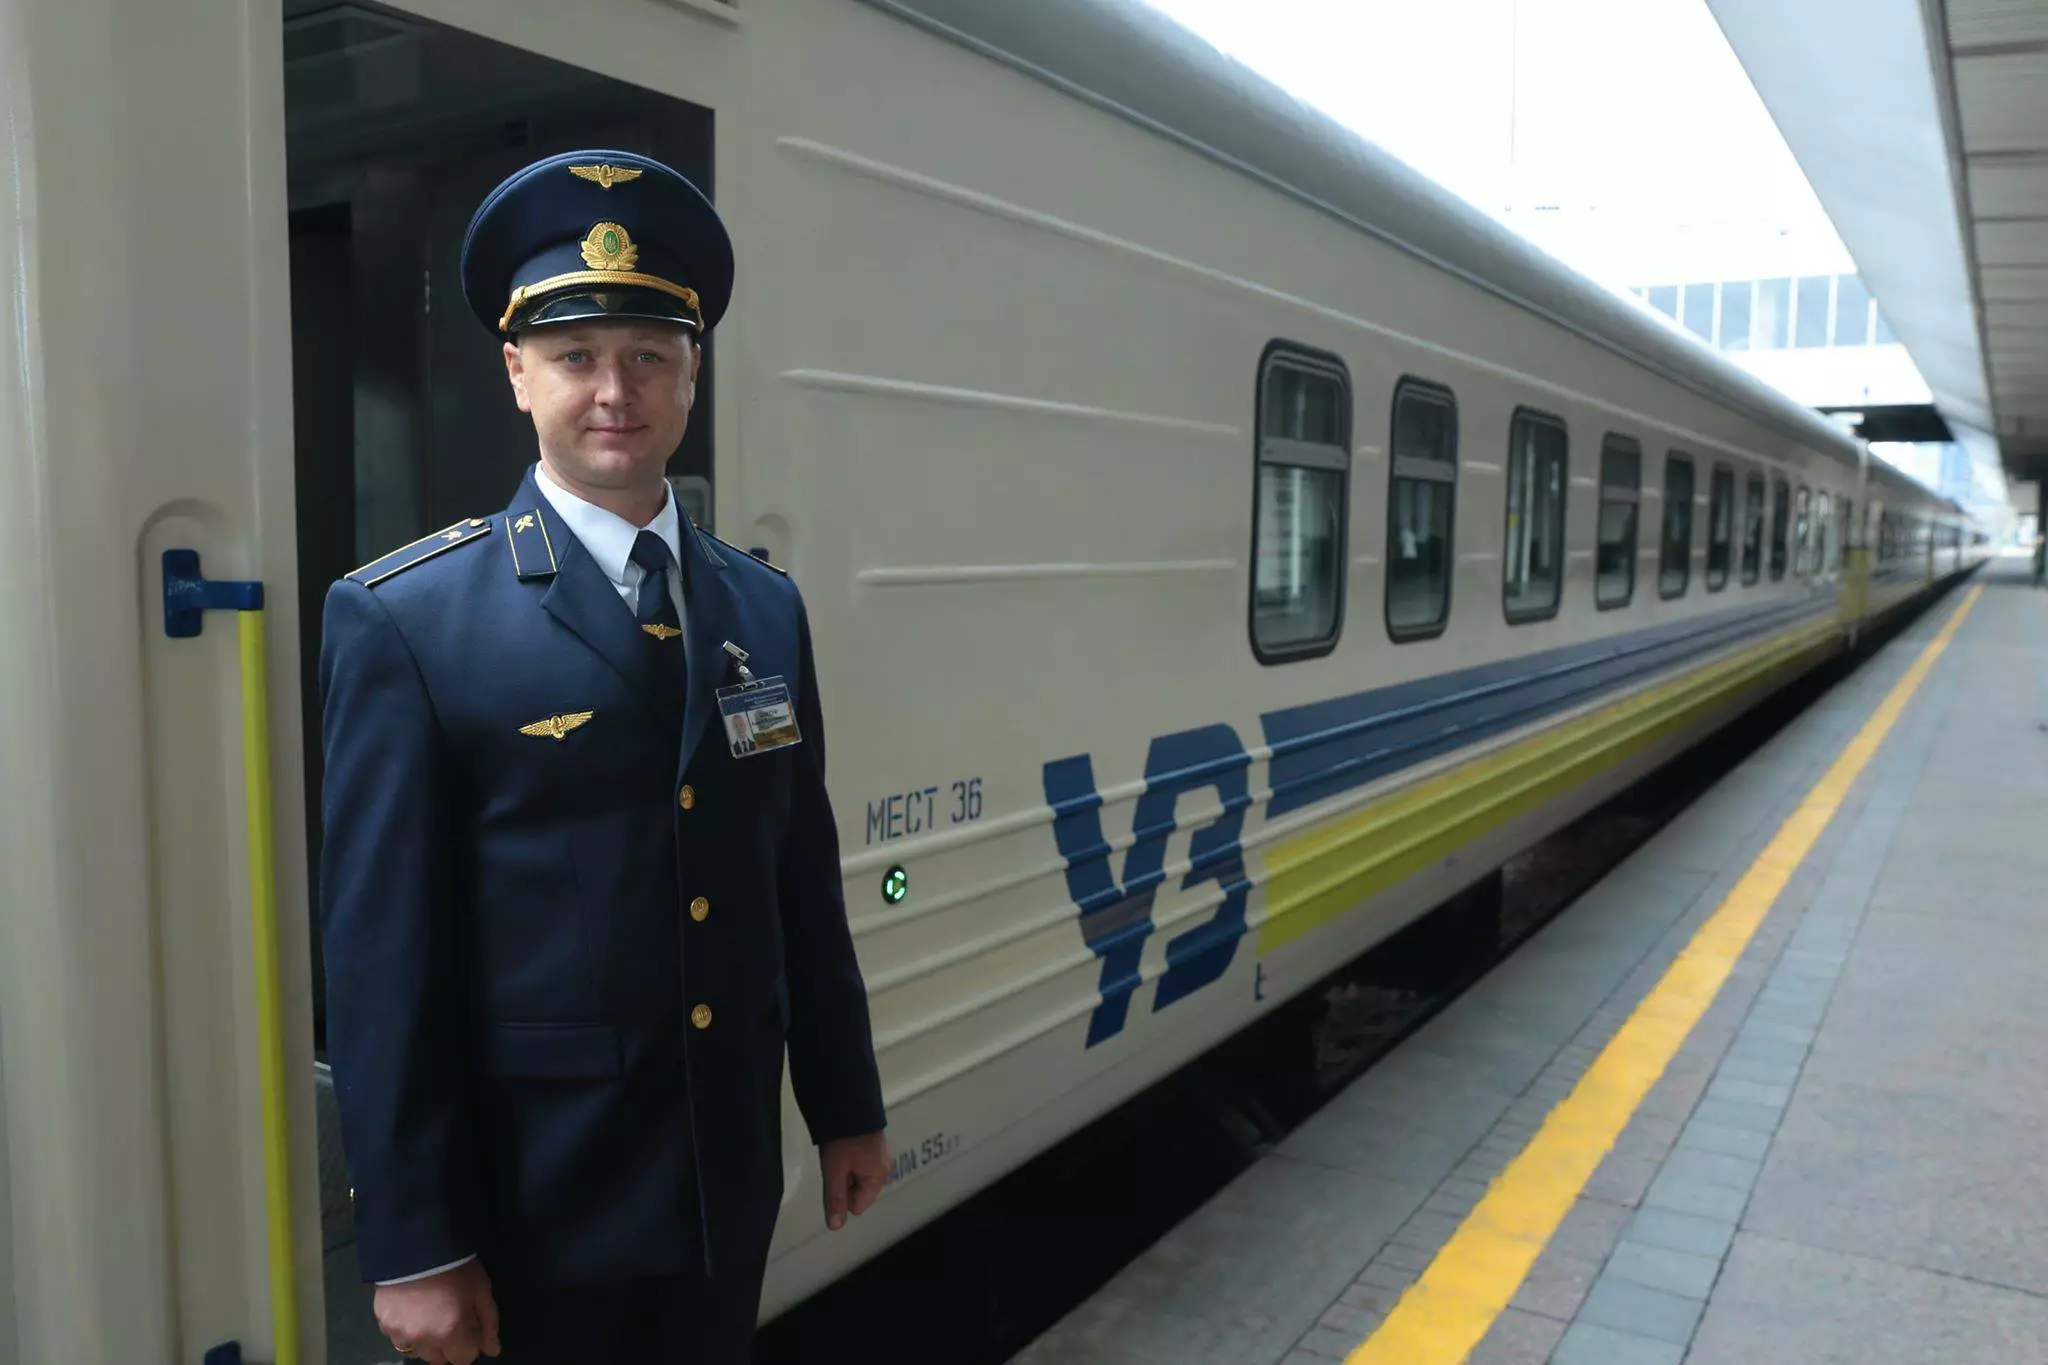 "Укрзализныця" сообщила о новом расписании поезда. Фото: "Укрзализныця"